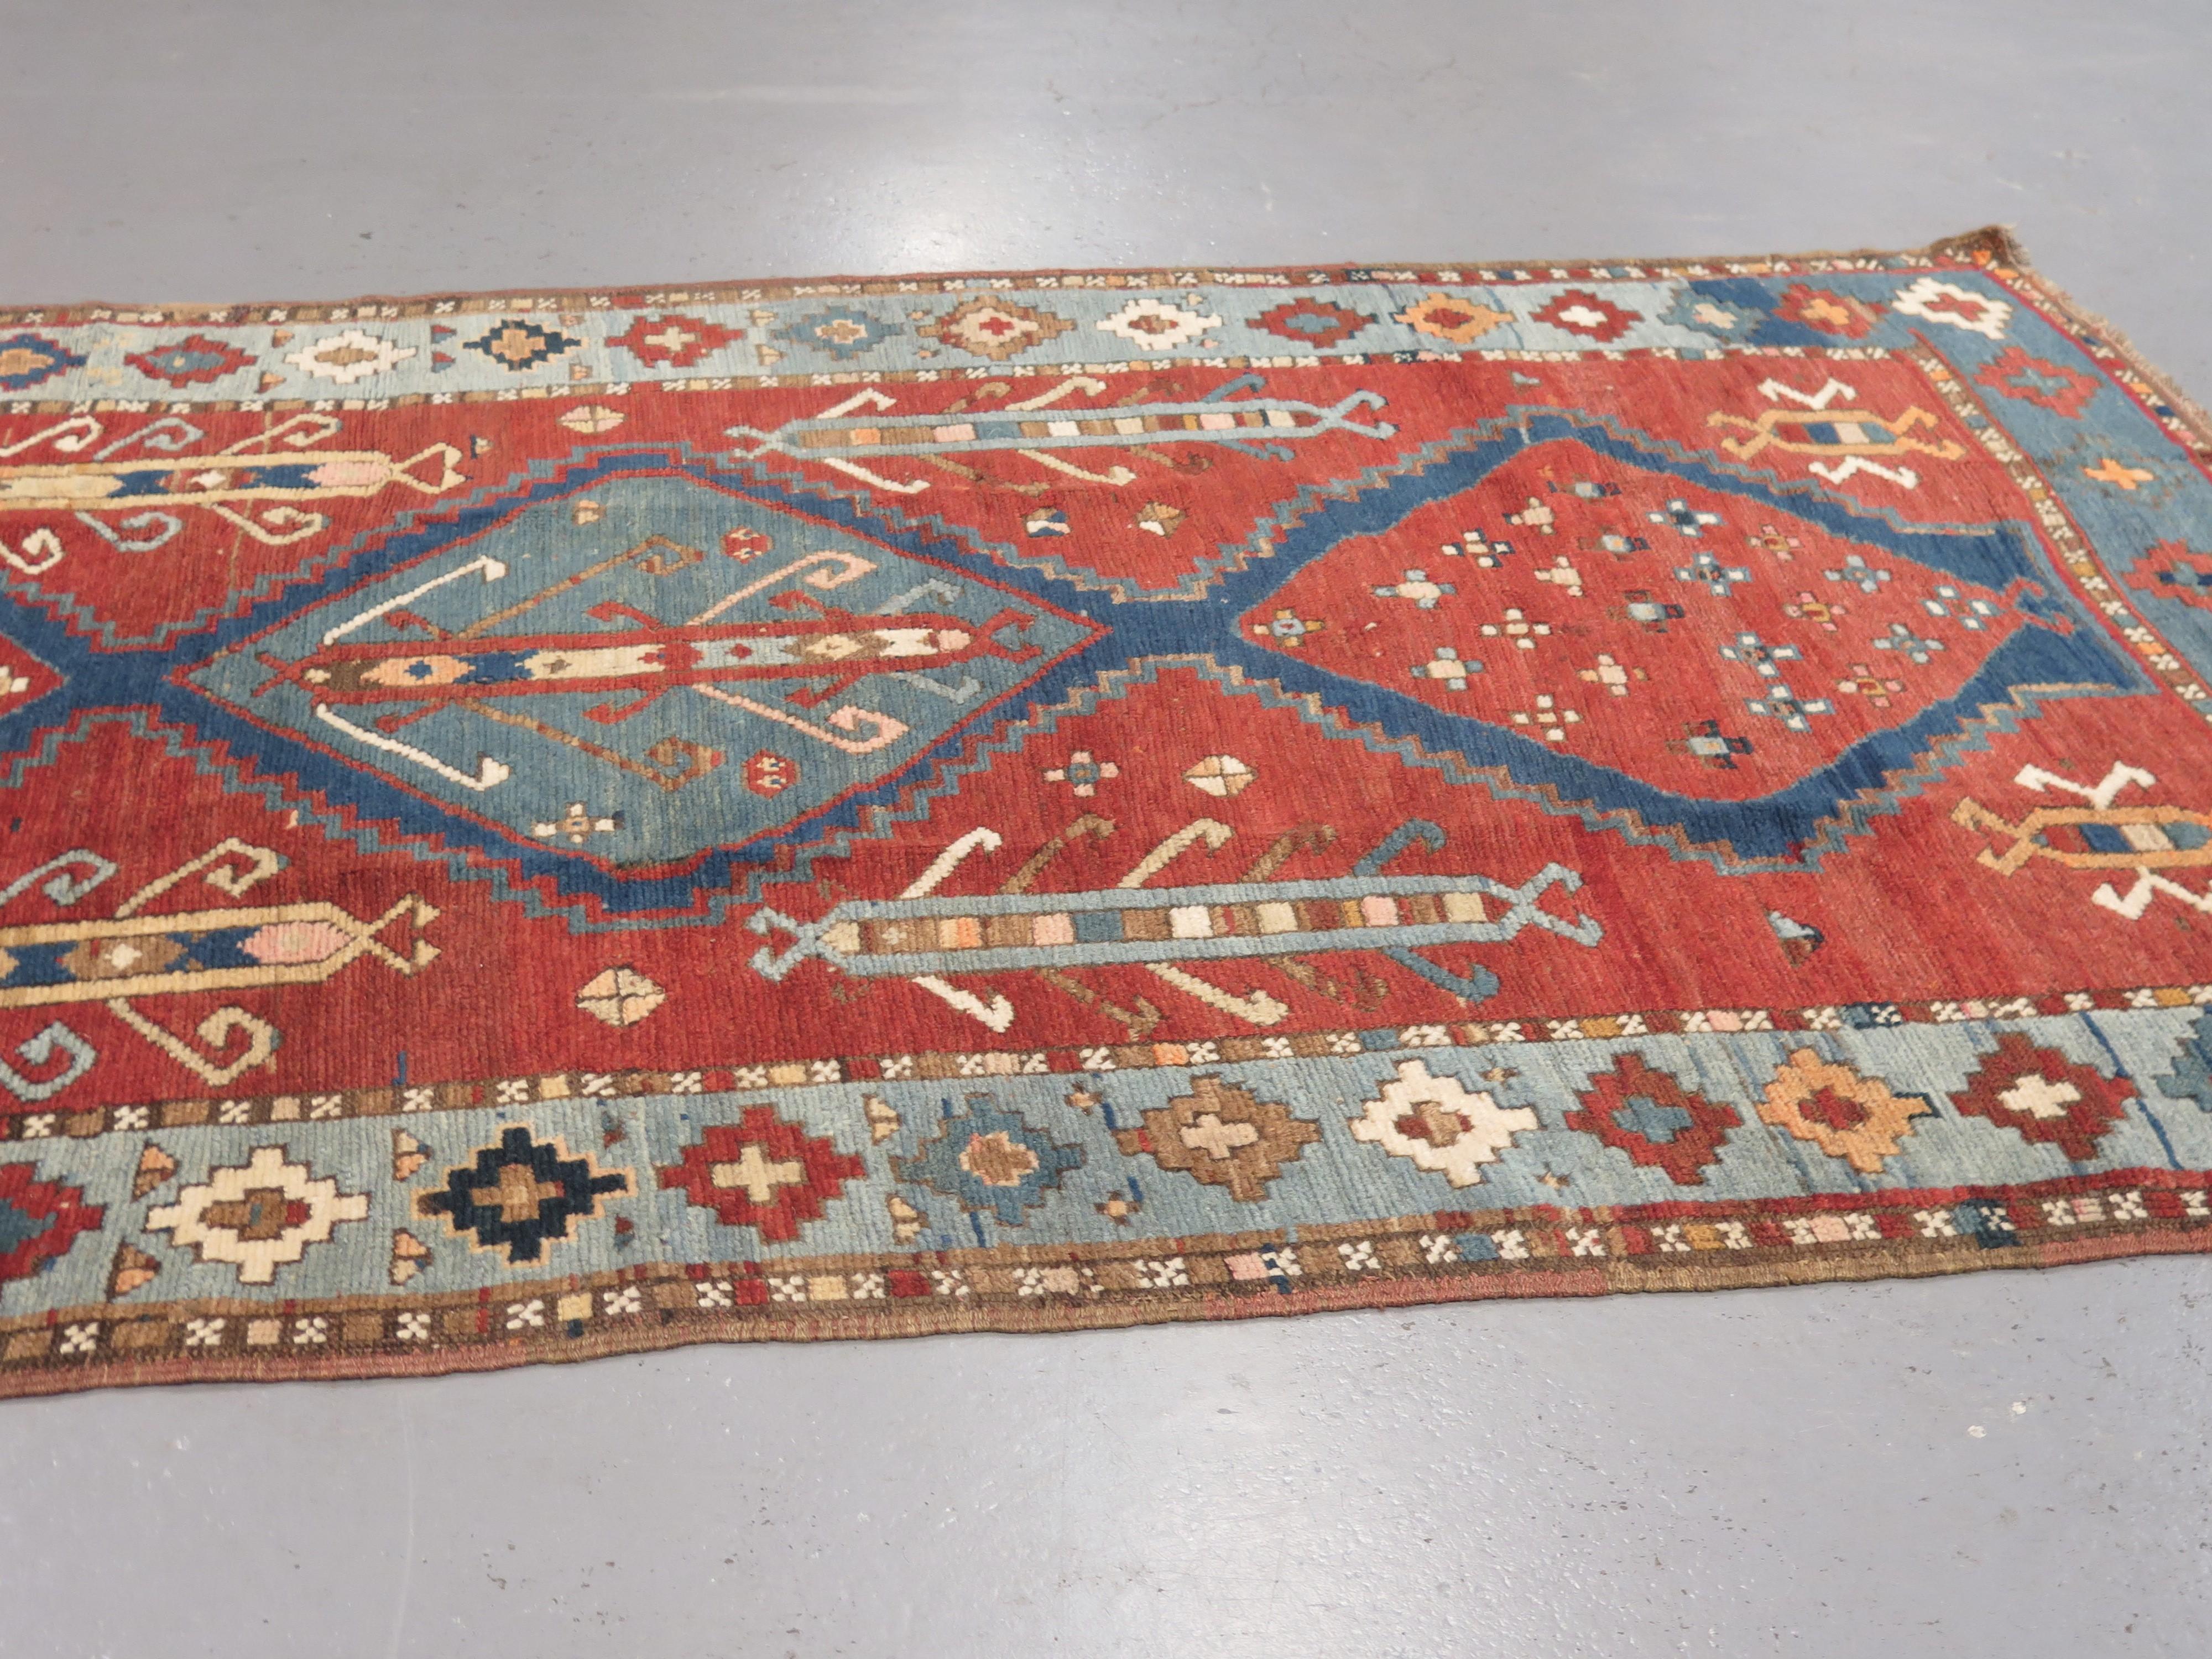 Antike Kazak-Teppiche, die im südlichen Kaukasus gewebt wurden, gehören zu den wertvollsten Stammesgeweben. Sie sind berühmt für die Vielfalt ihrer Muster, die kühnen Farben und die hohe Knotendichte, die den geometrischen Mustern in ihren